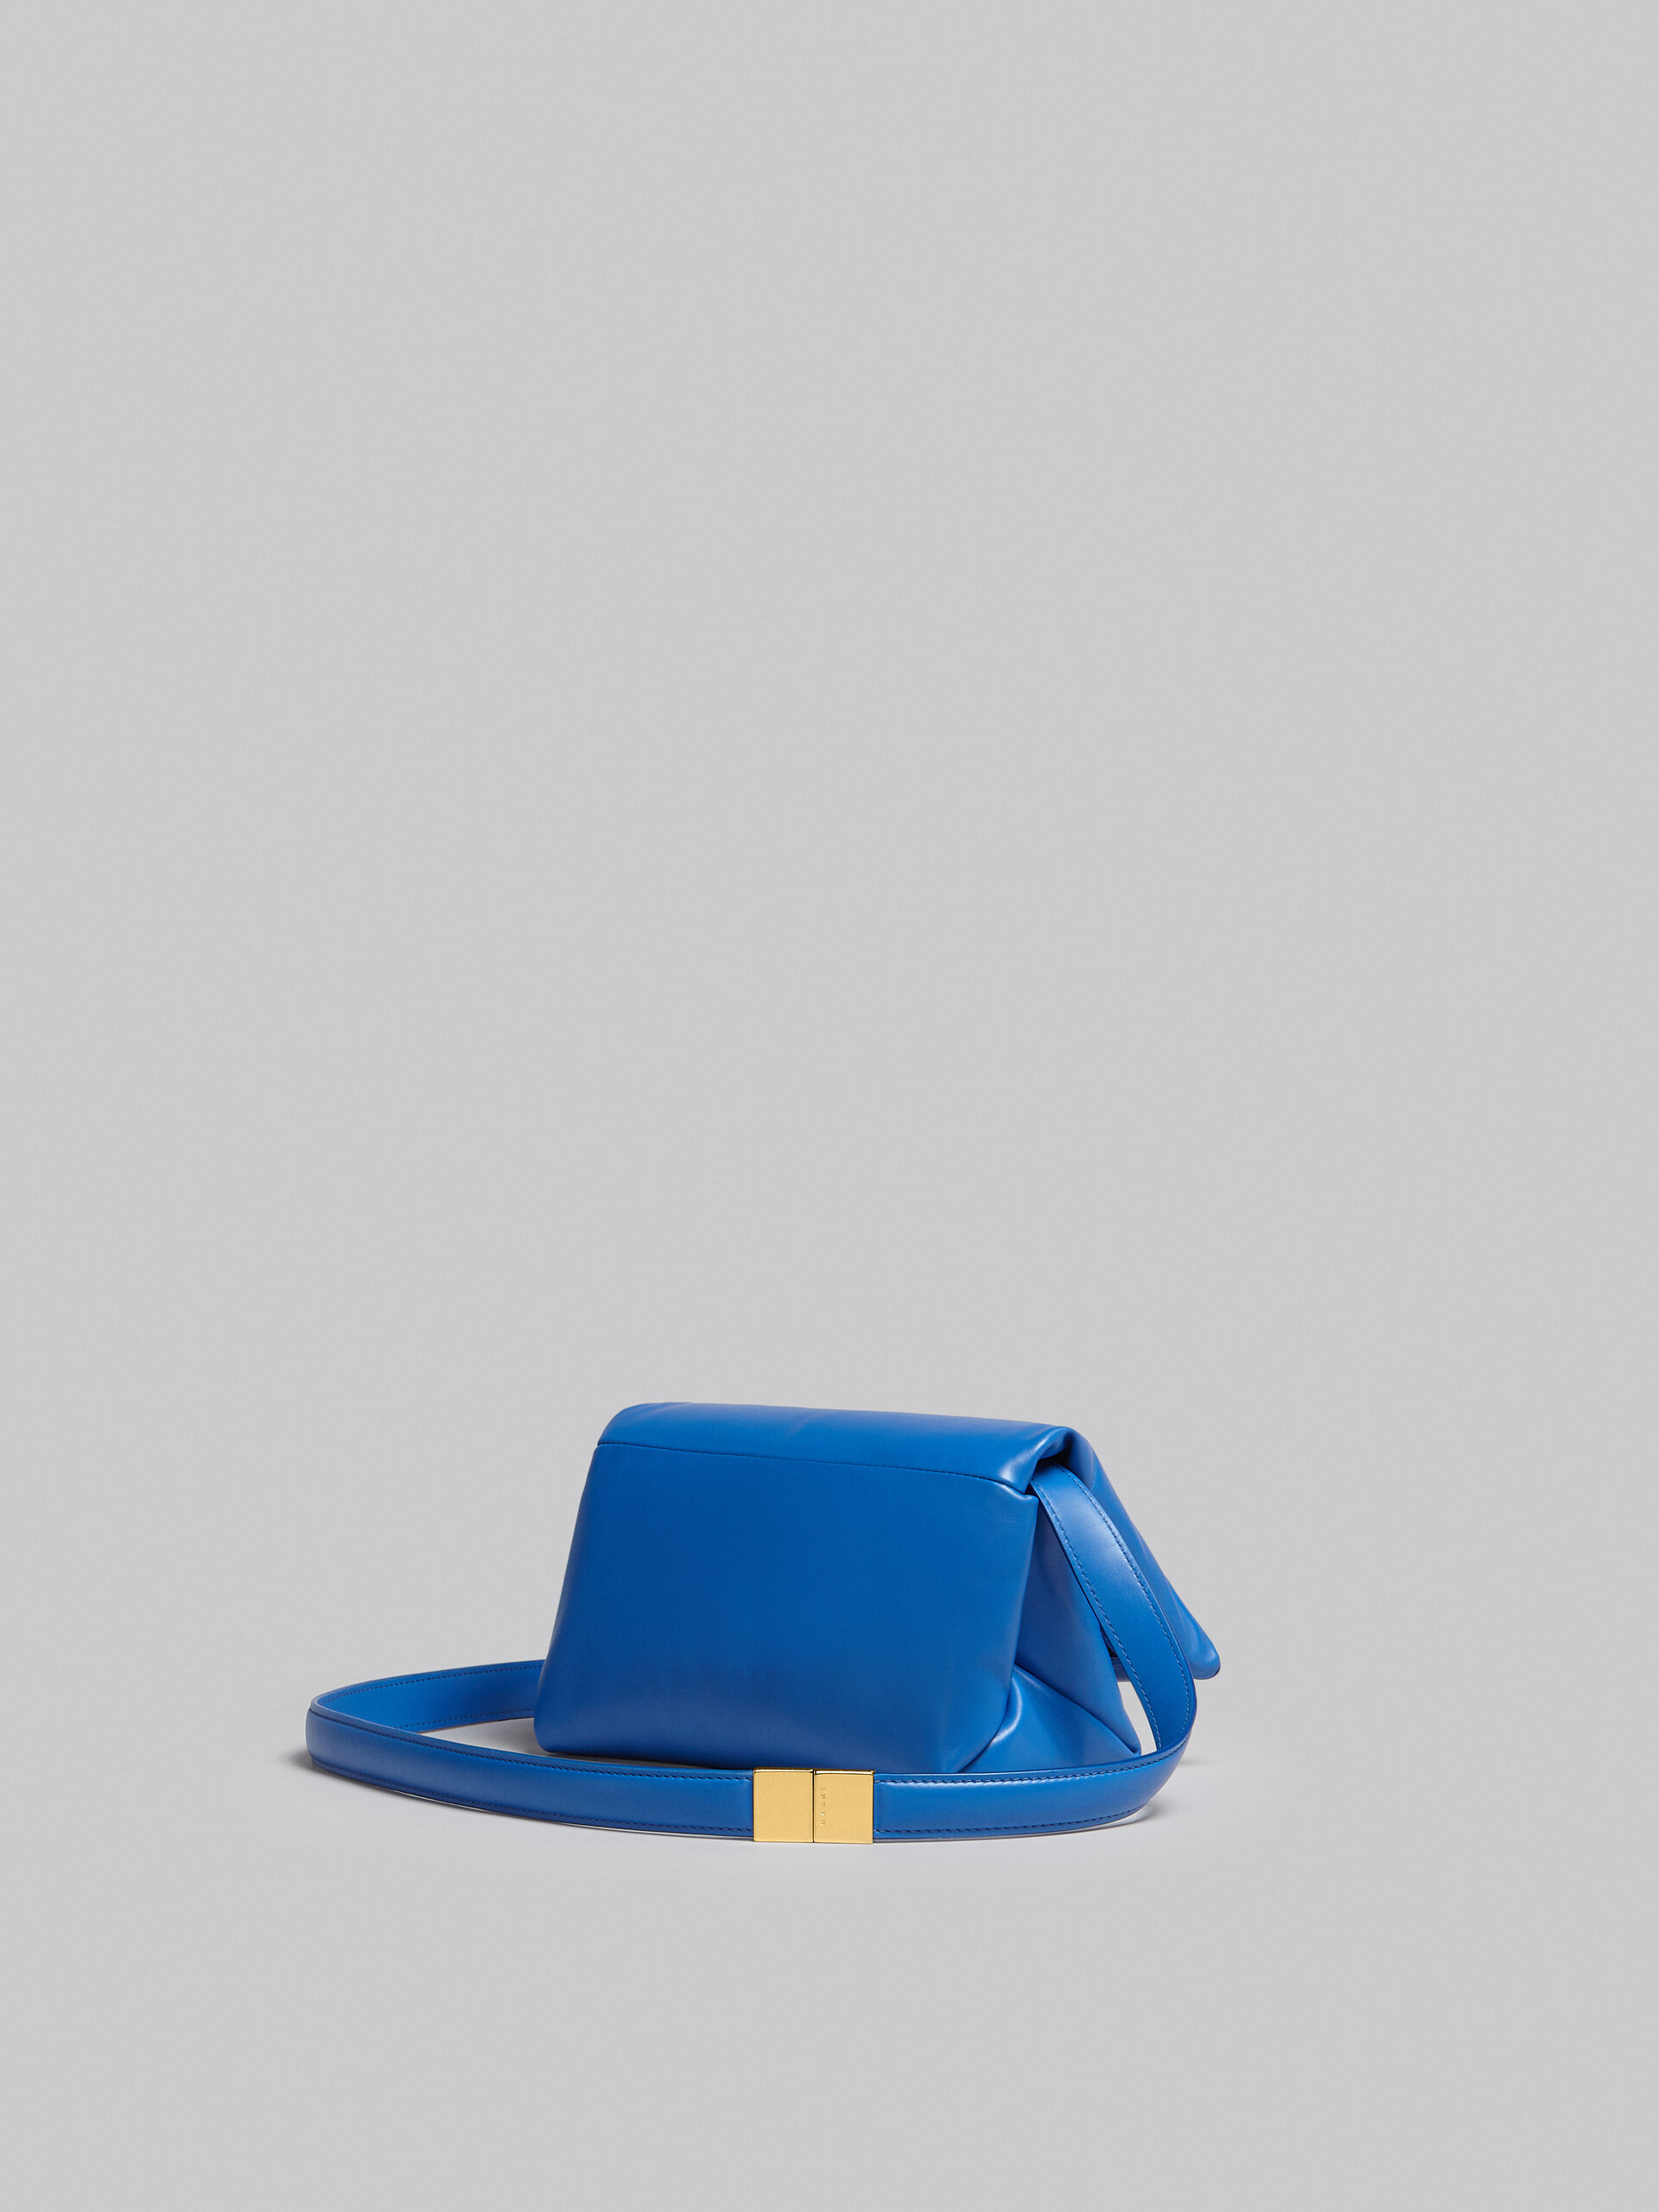 Small blue calsfkin Prisma bag - Shoulder Bag - Image 3